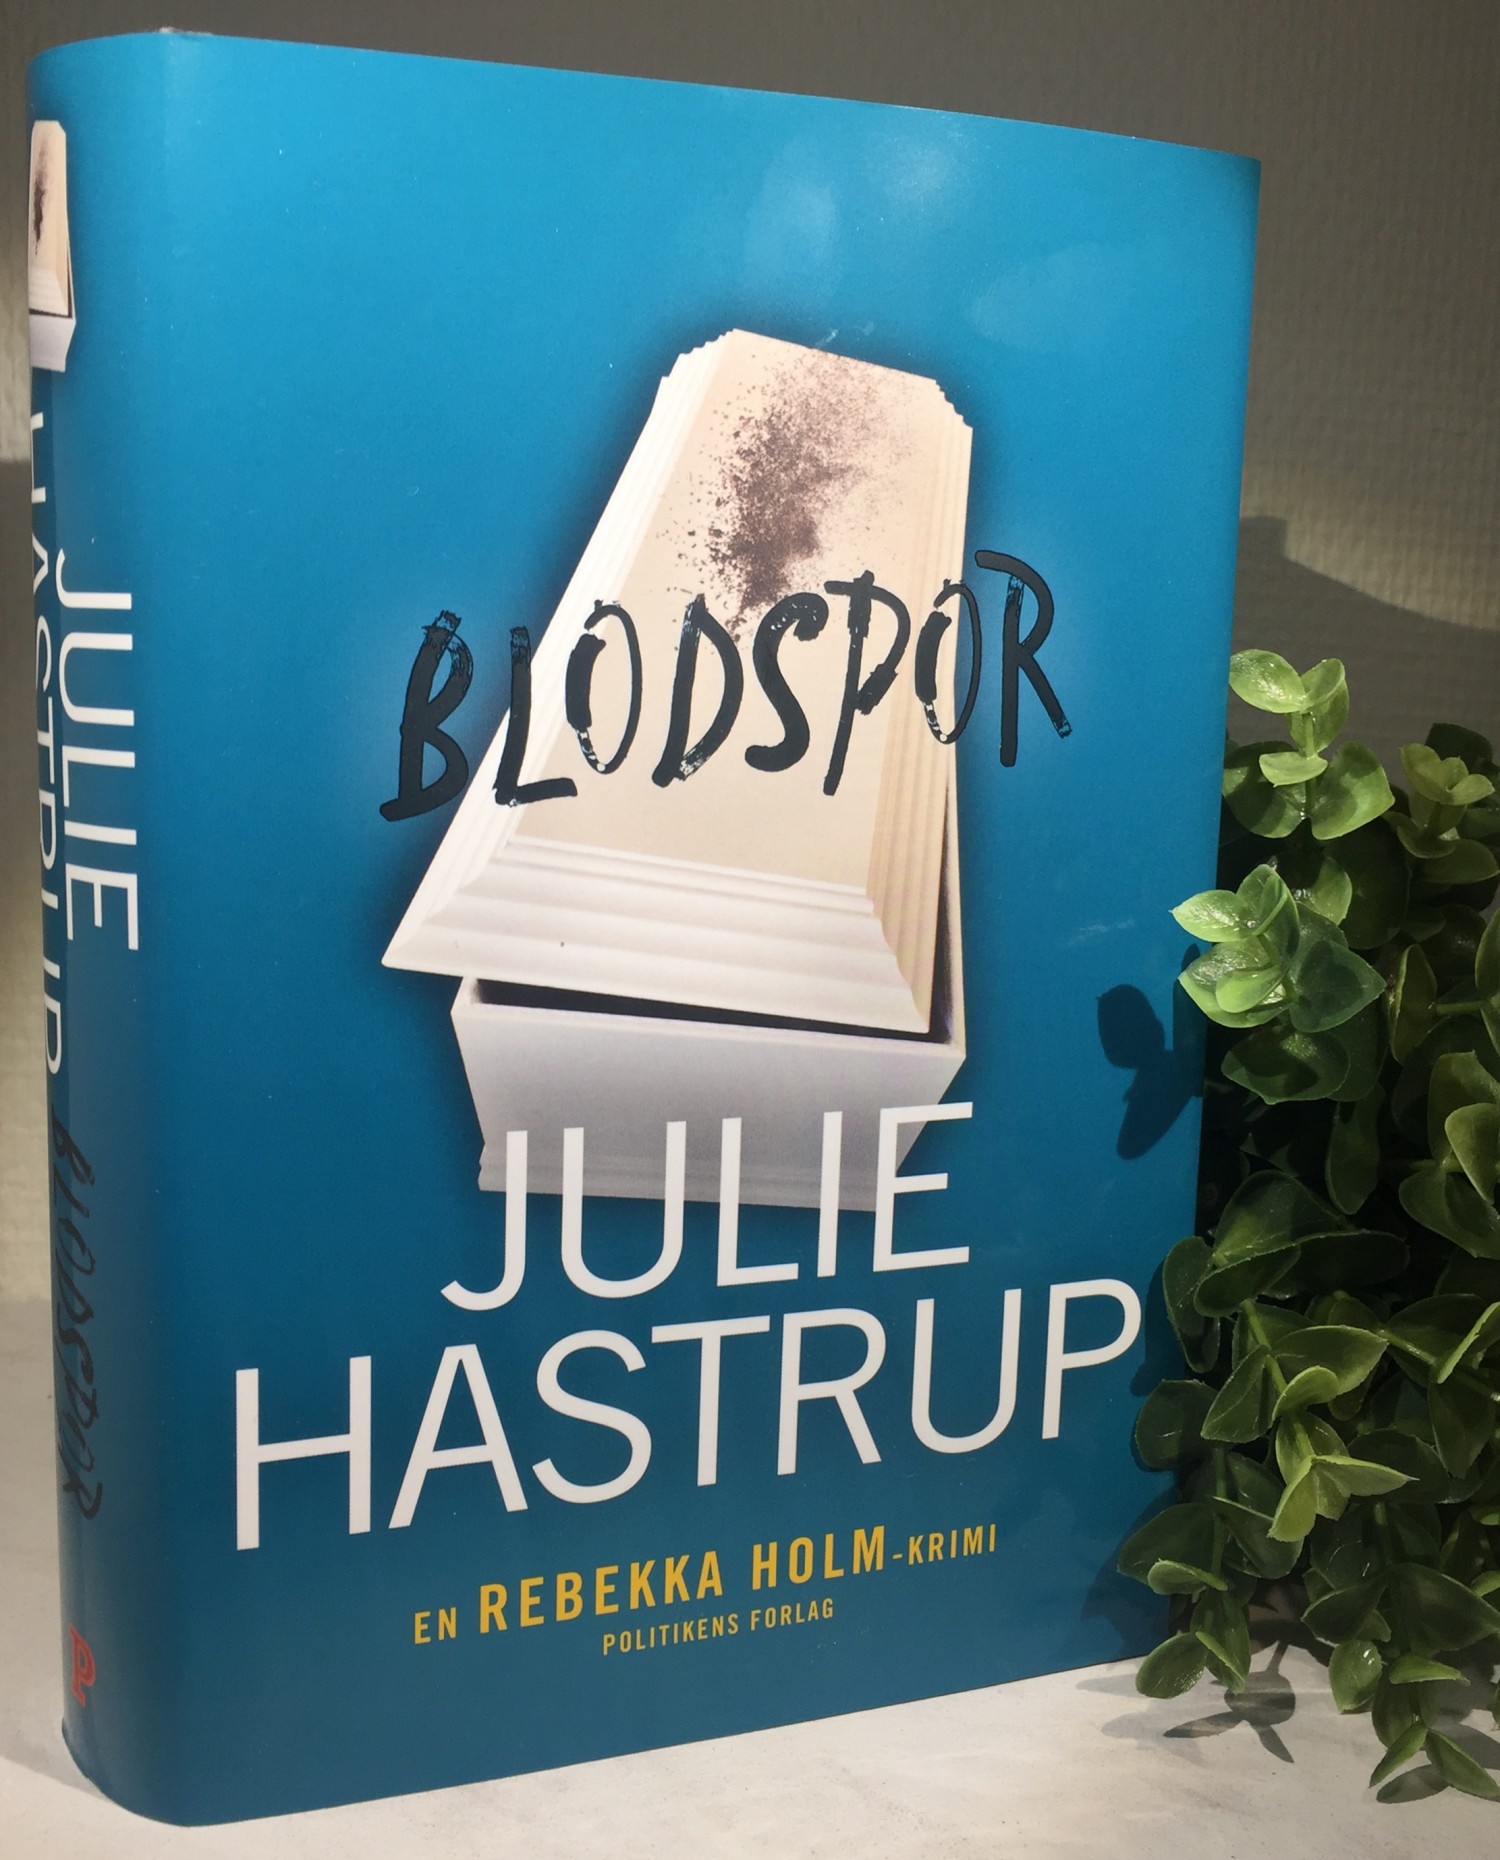 Julie Hastrup, Blodspor Julie Hastrup, Rebekka Holm, Politikens Forlag, Anmeldelse, Boganmeldelse, Anmeldereksemplar, 